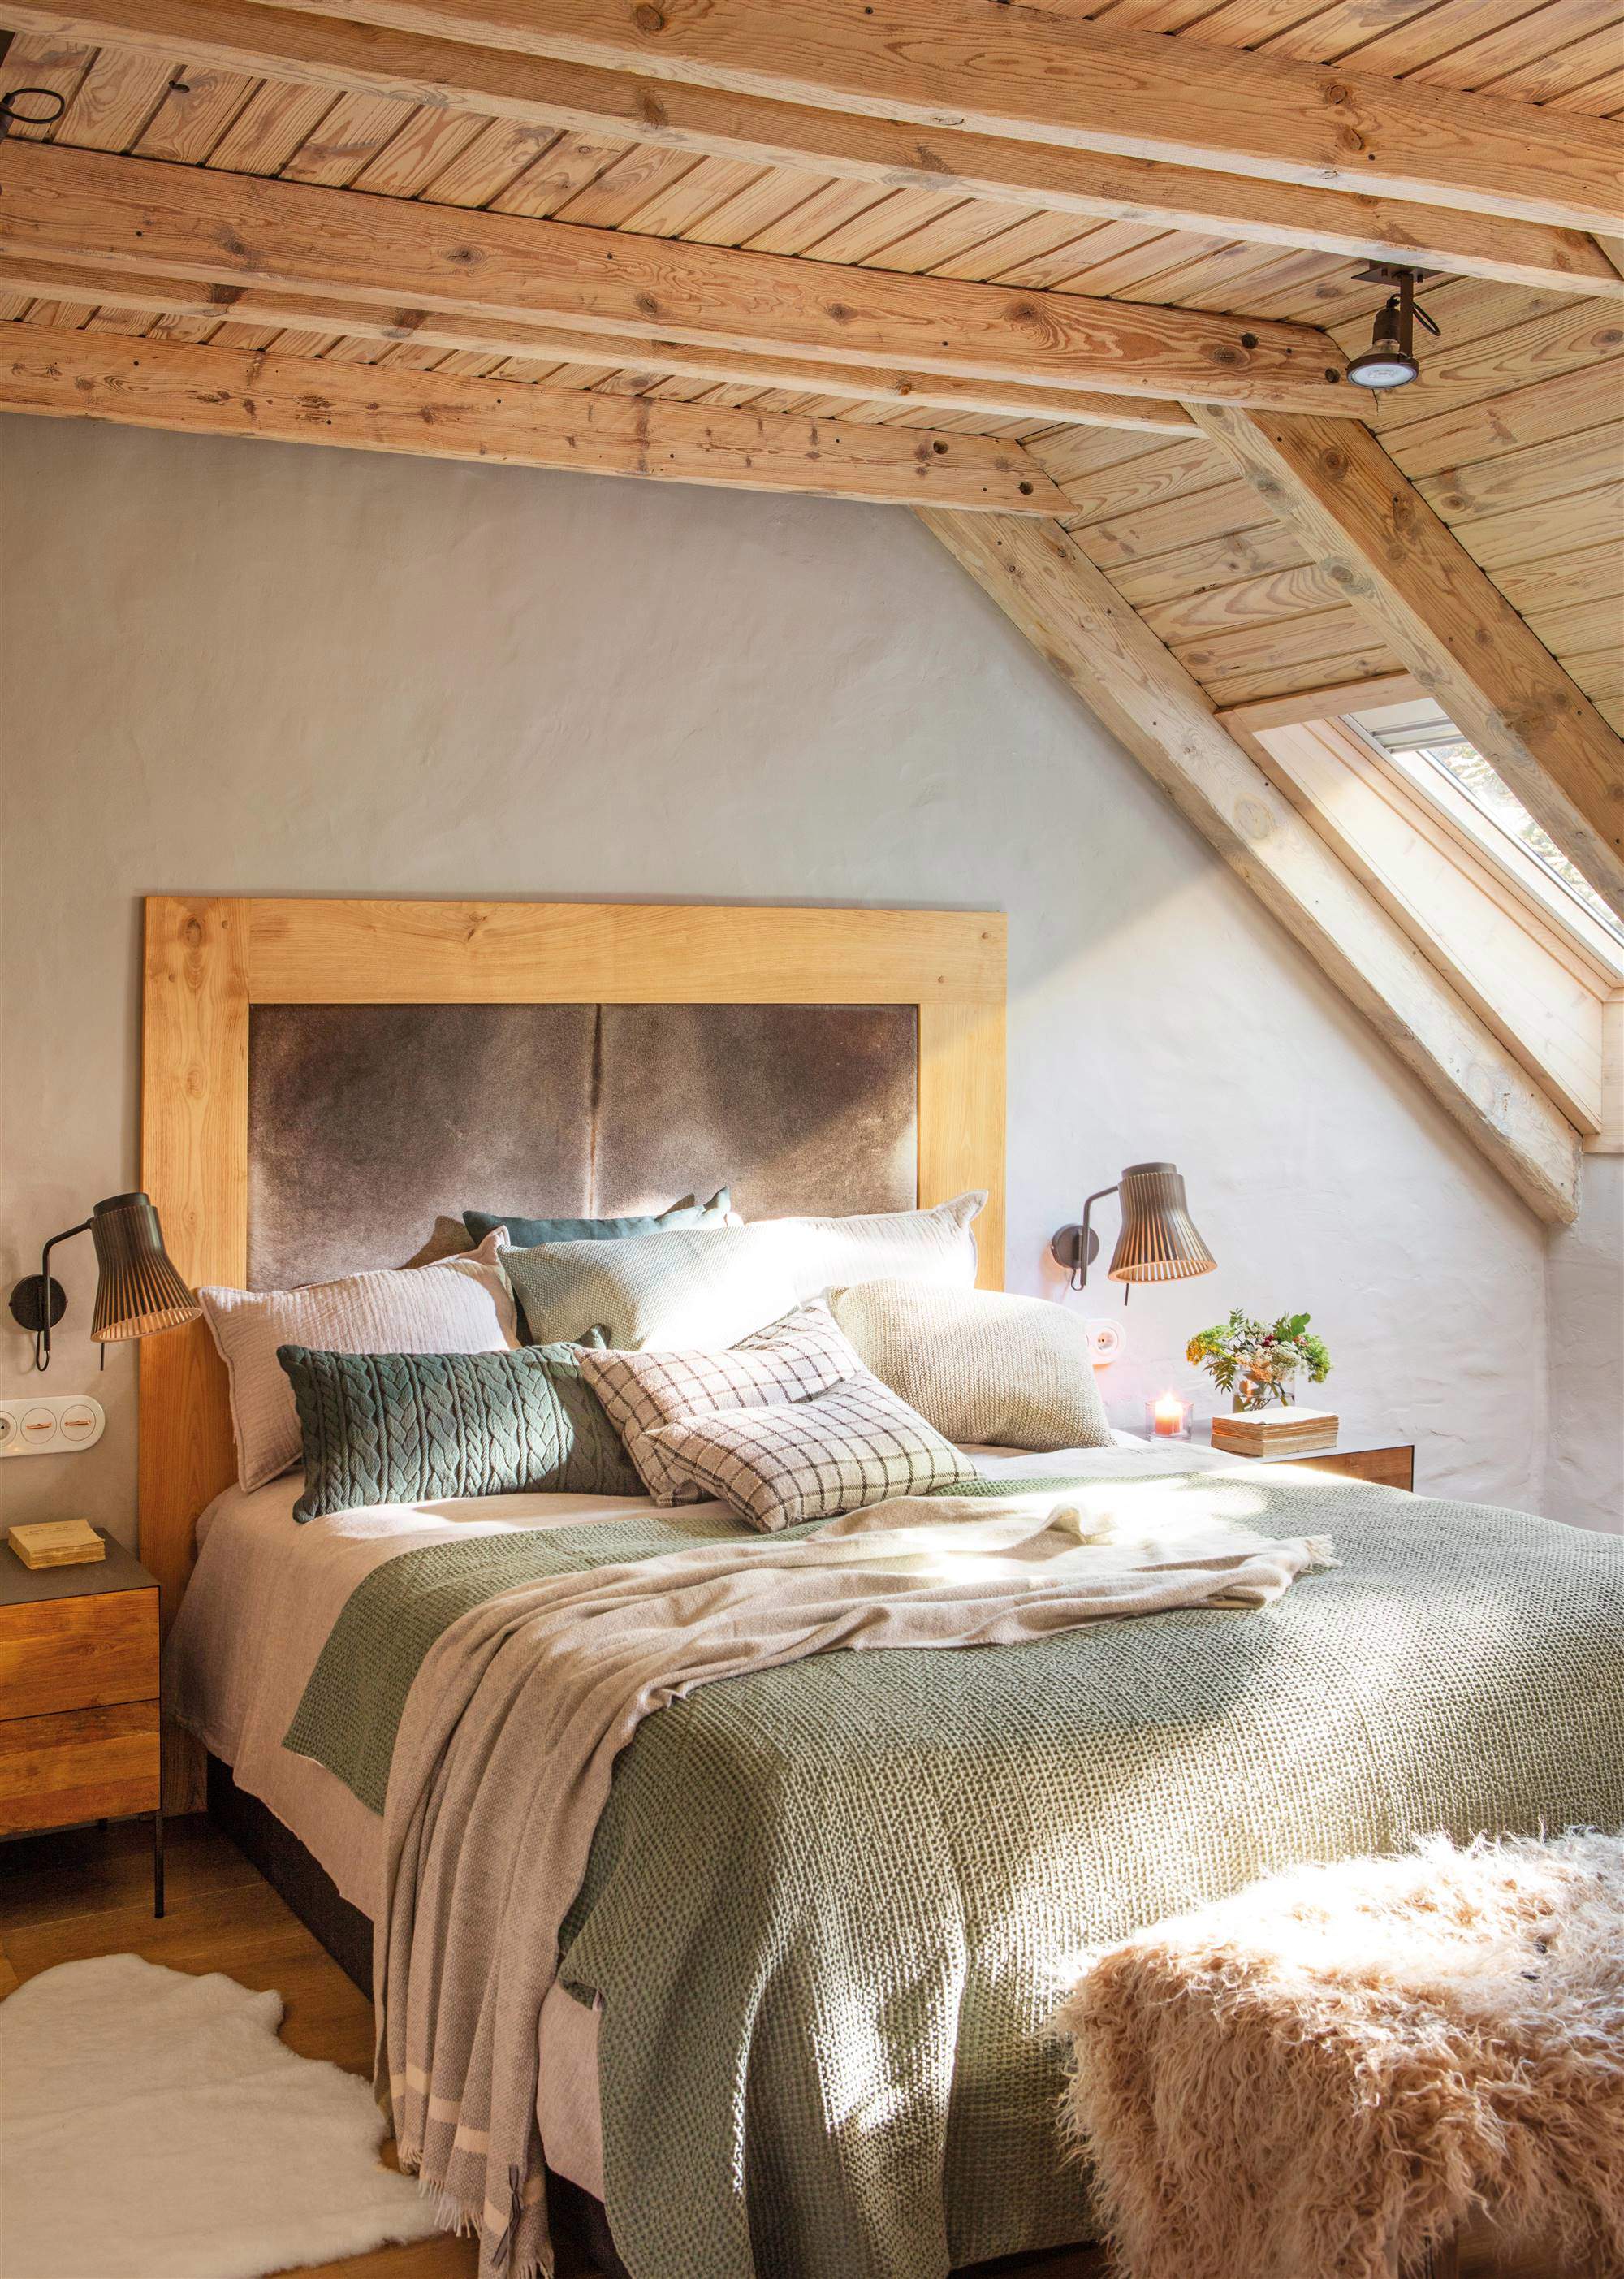 Dormitorio con techo de madera y gran cabecero de madera tapizado.